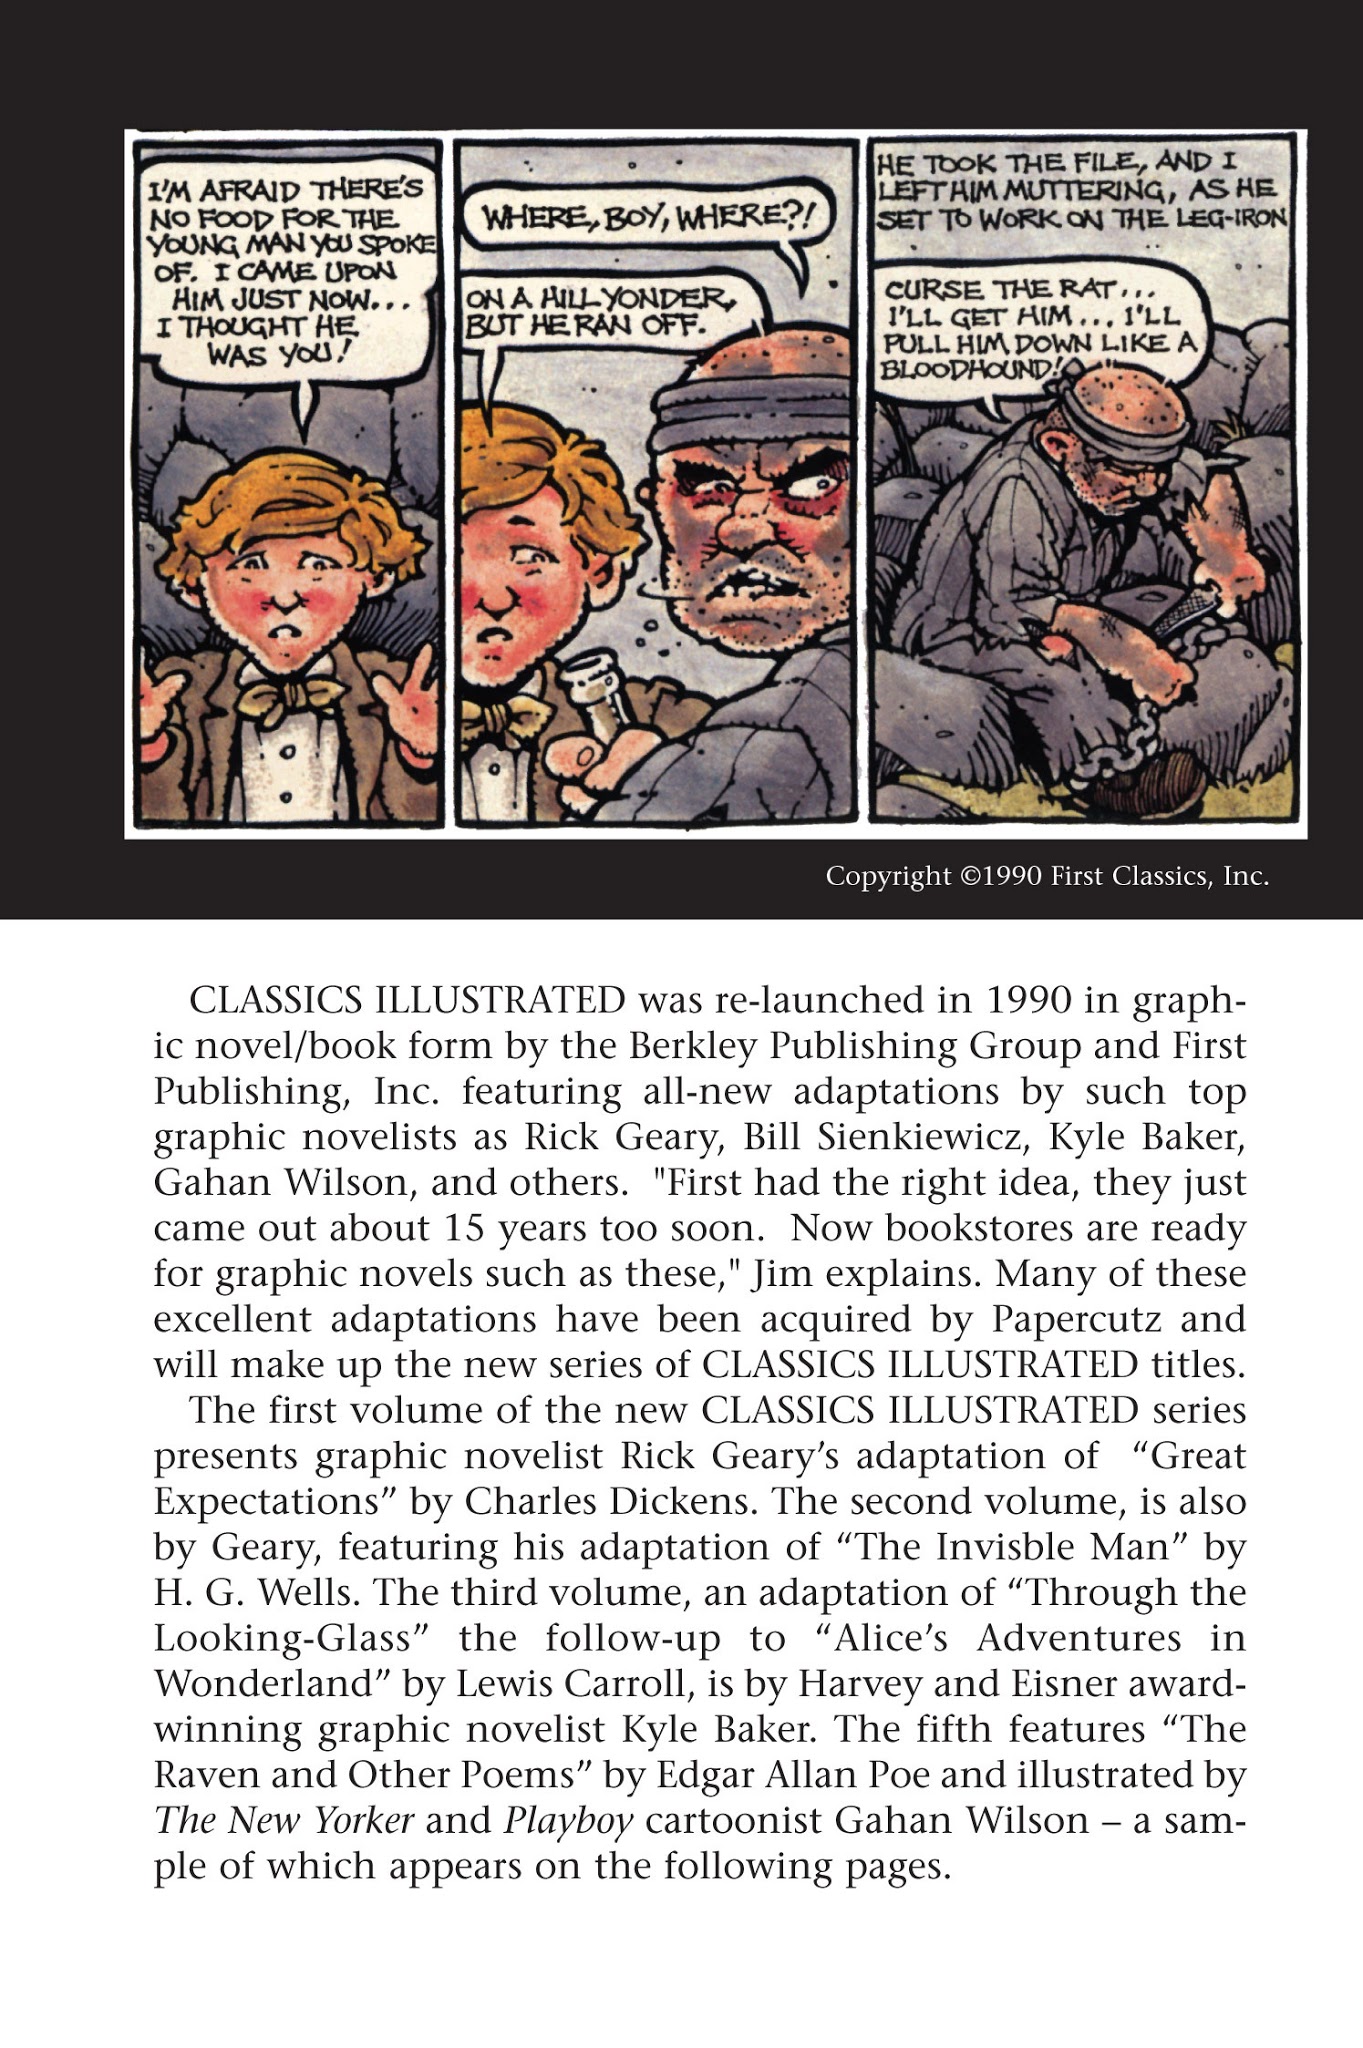 Read online Nancy Drew comic -  Issue #17 - 91